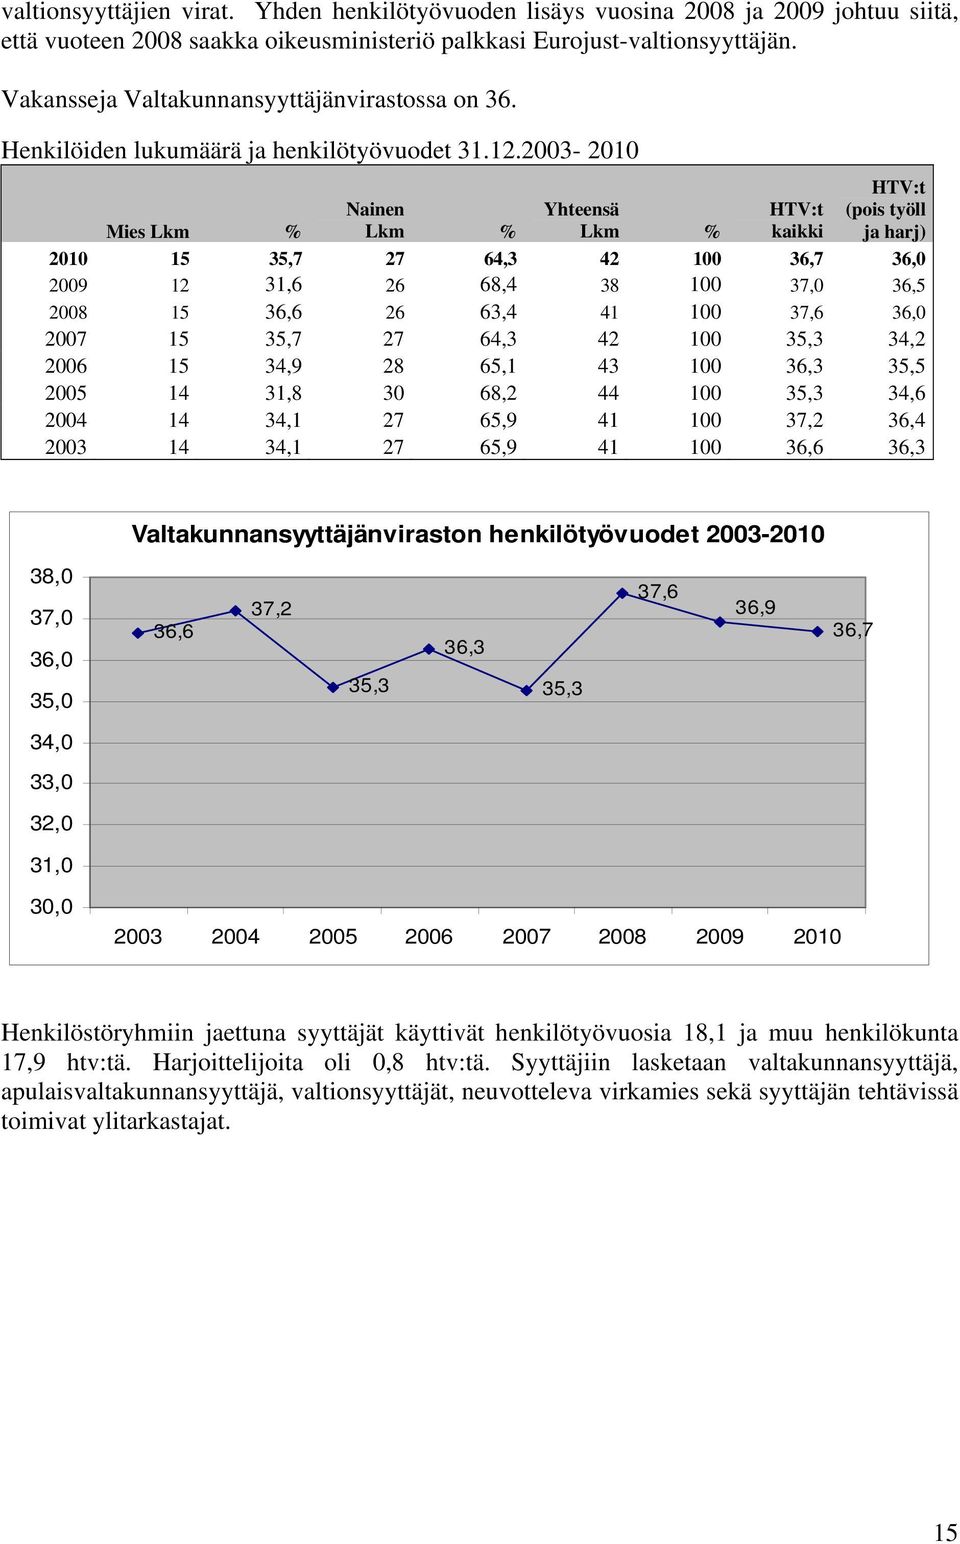 2003-2010 Mies Lkm % Nainen Lkm % Yhteensä Lkm % HTV:t kaikki HTV:t (pois työll ja harj) 2010 15 35,7 27 64,3 42 100 36,7 36,0 2009 12 31,6 26 68,4 38 100 37,0 36,5 2008 15 36,6 26 63,4 41 100 37,6